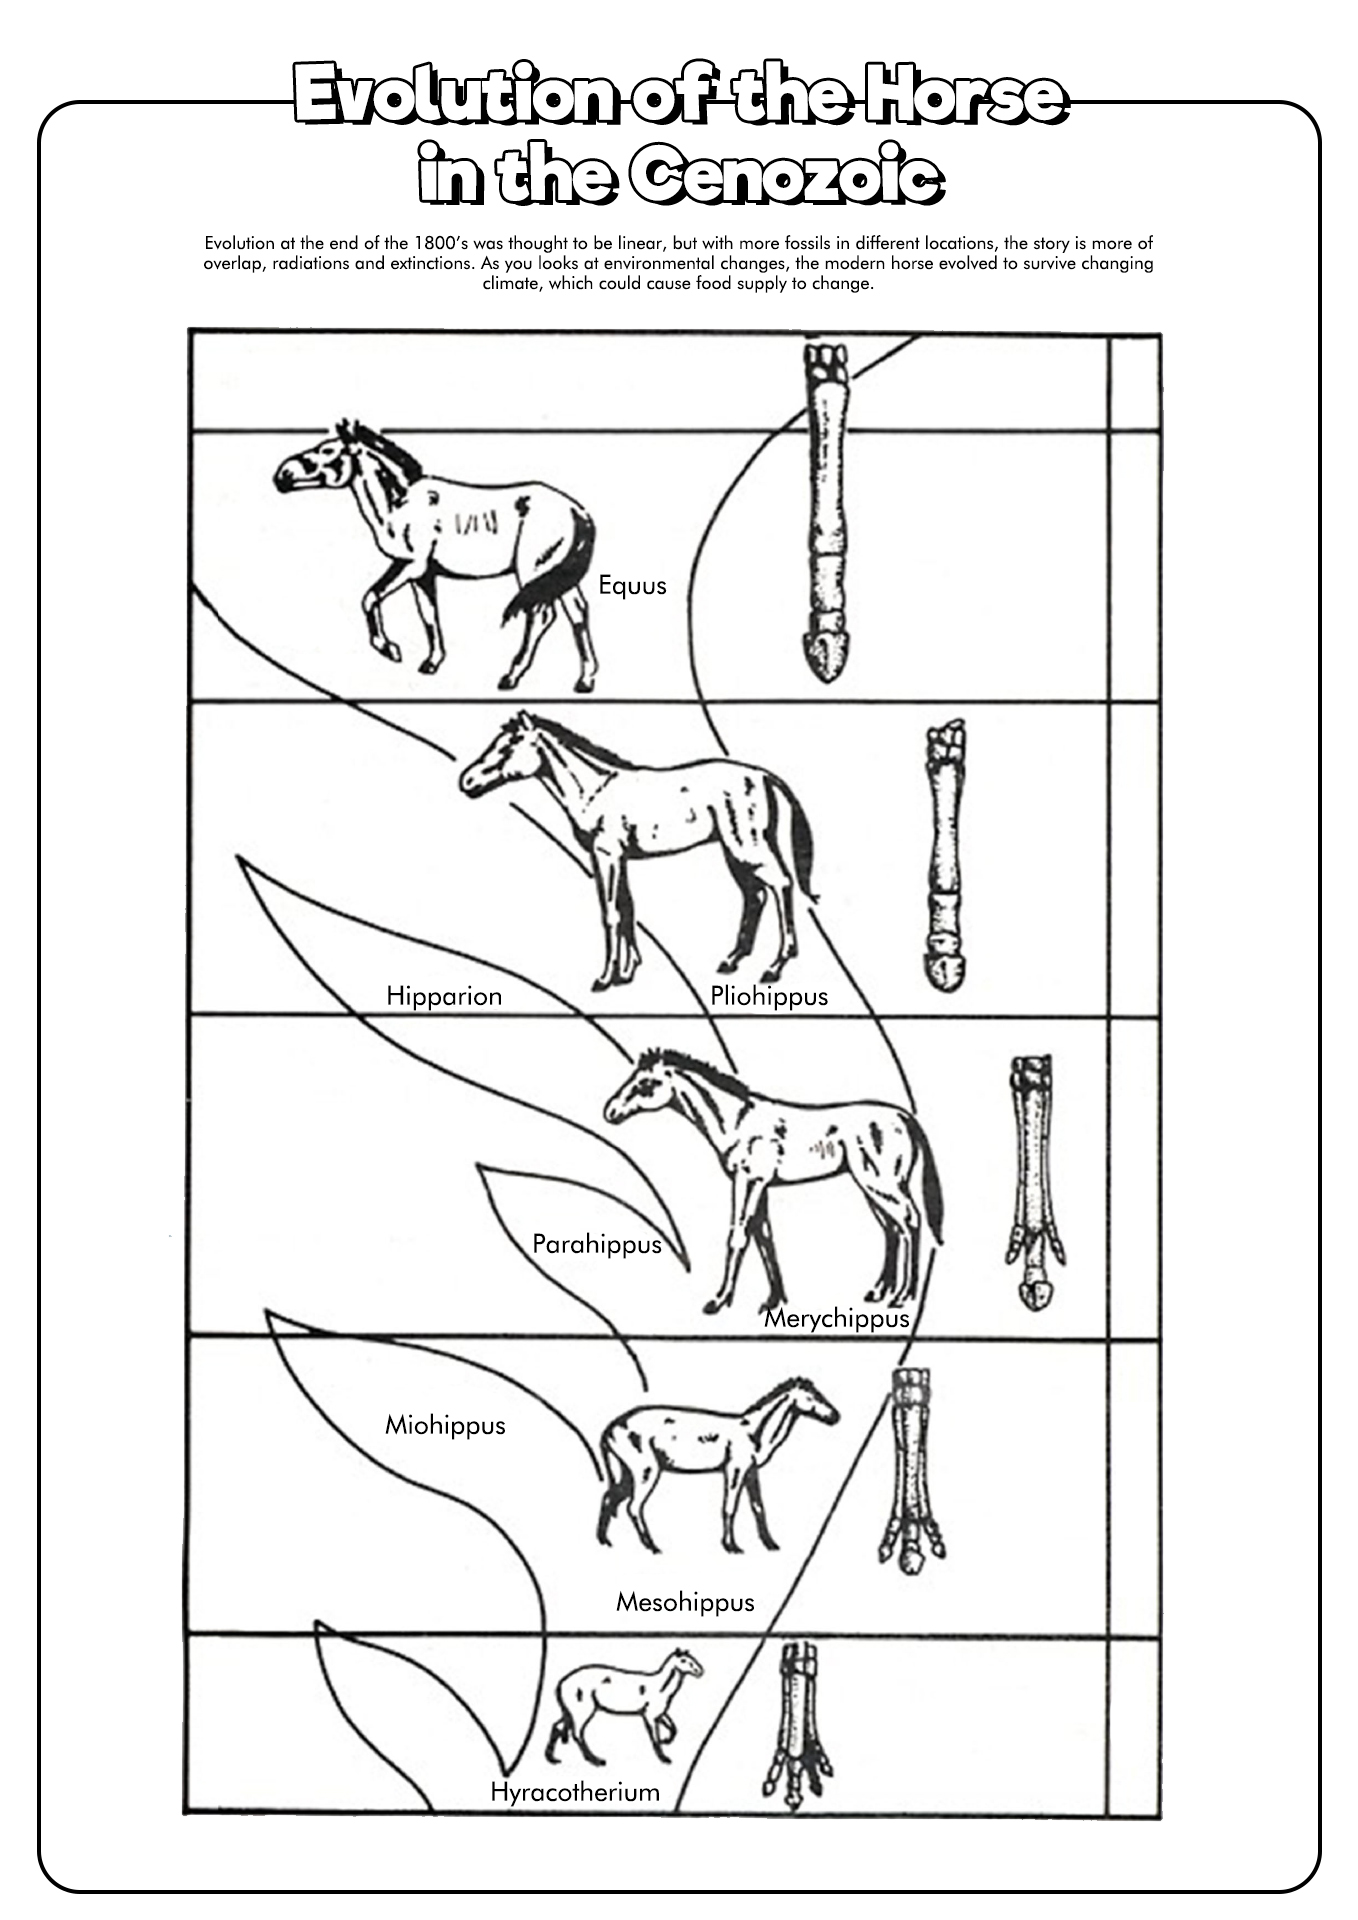 Evolution of the Horse Worksheet Image